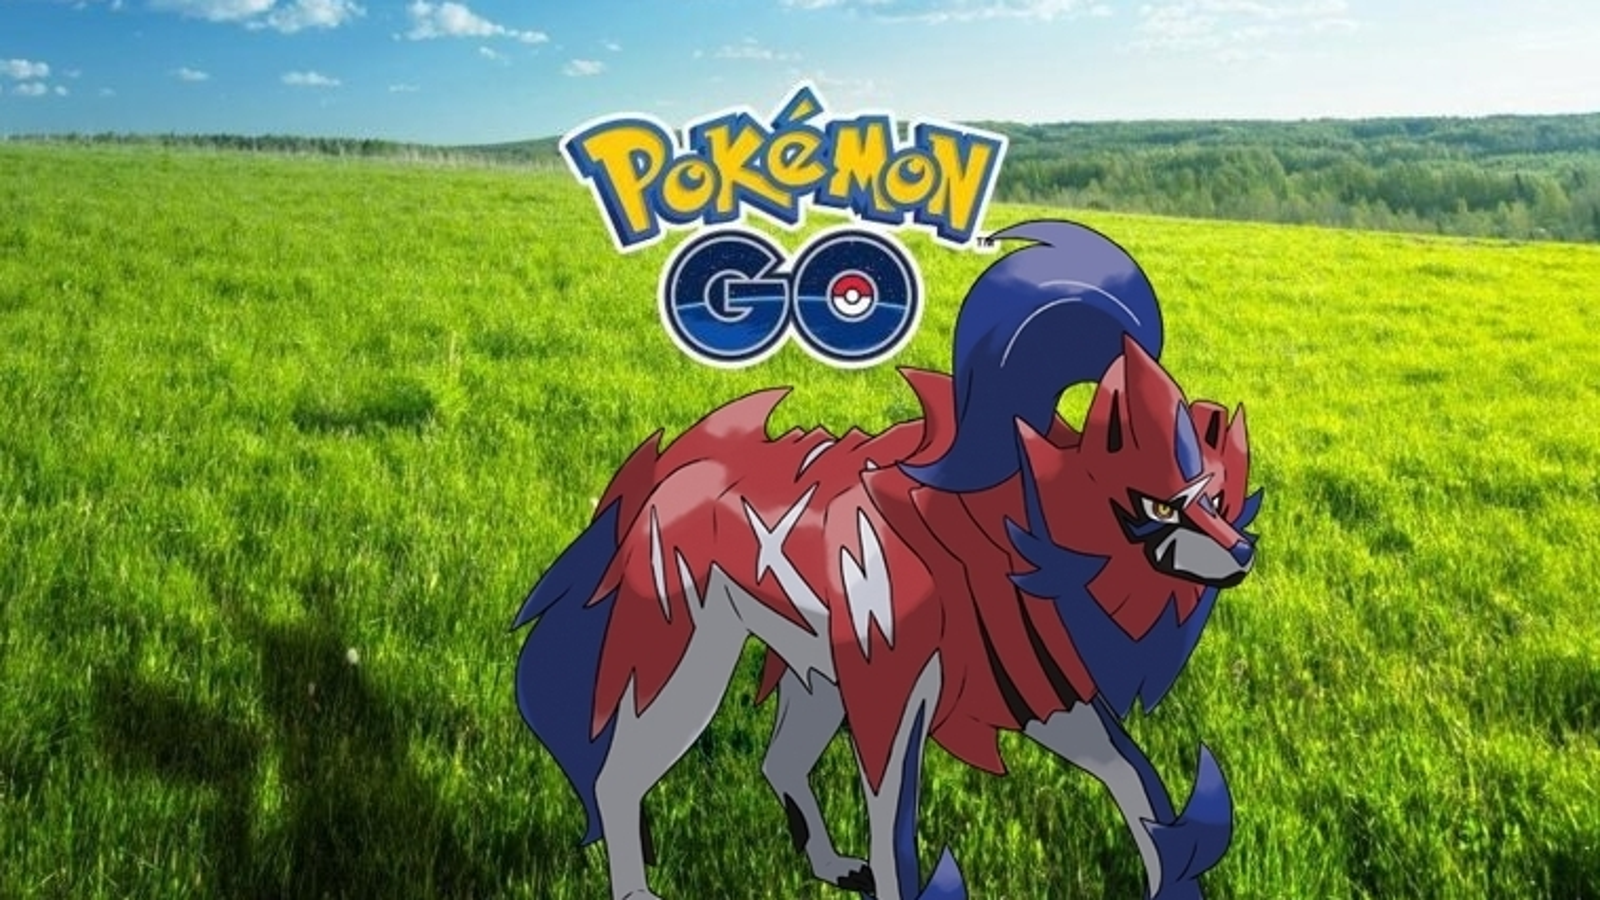 Pokémon Go News BR - Zamazenta 🛡️ Pokémon Lendário